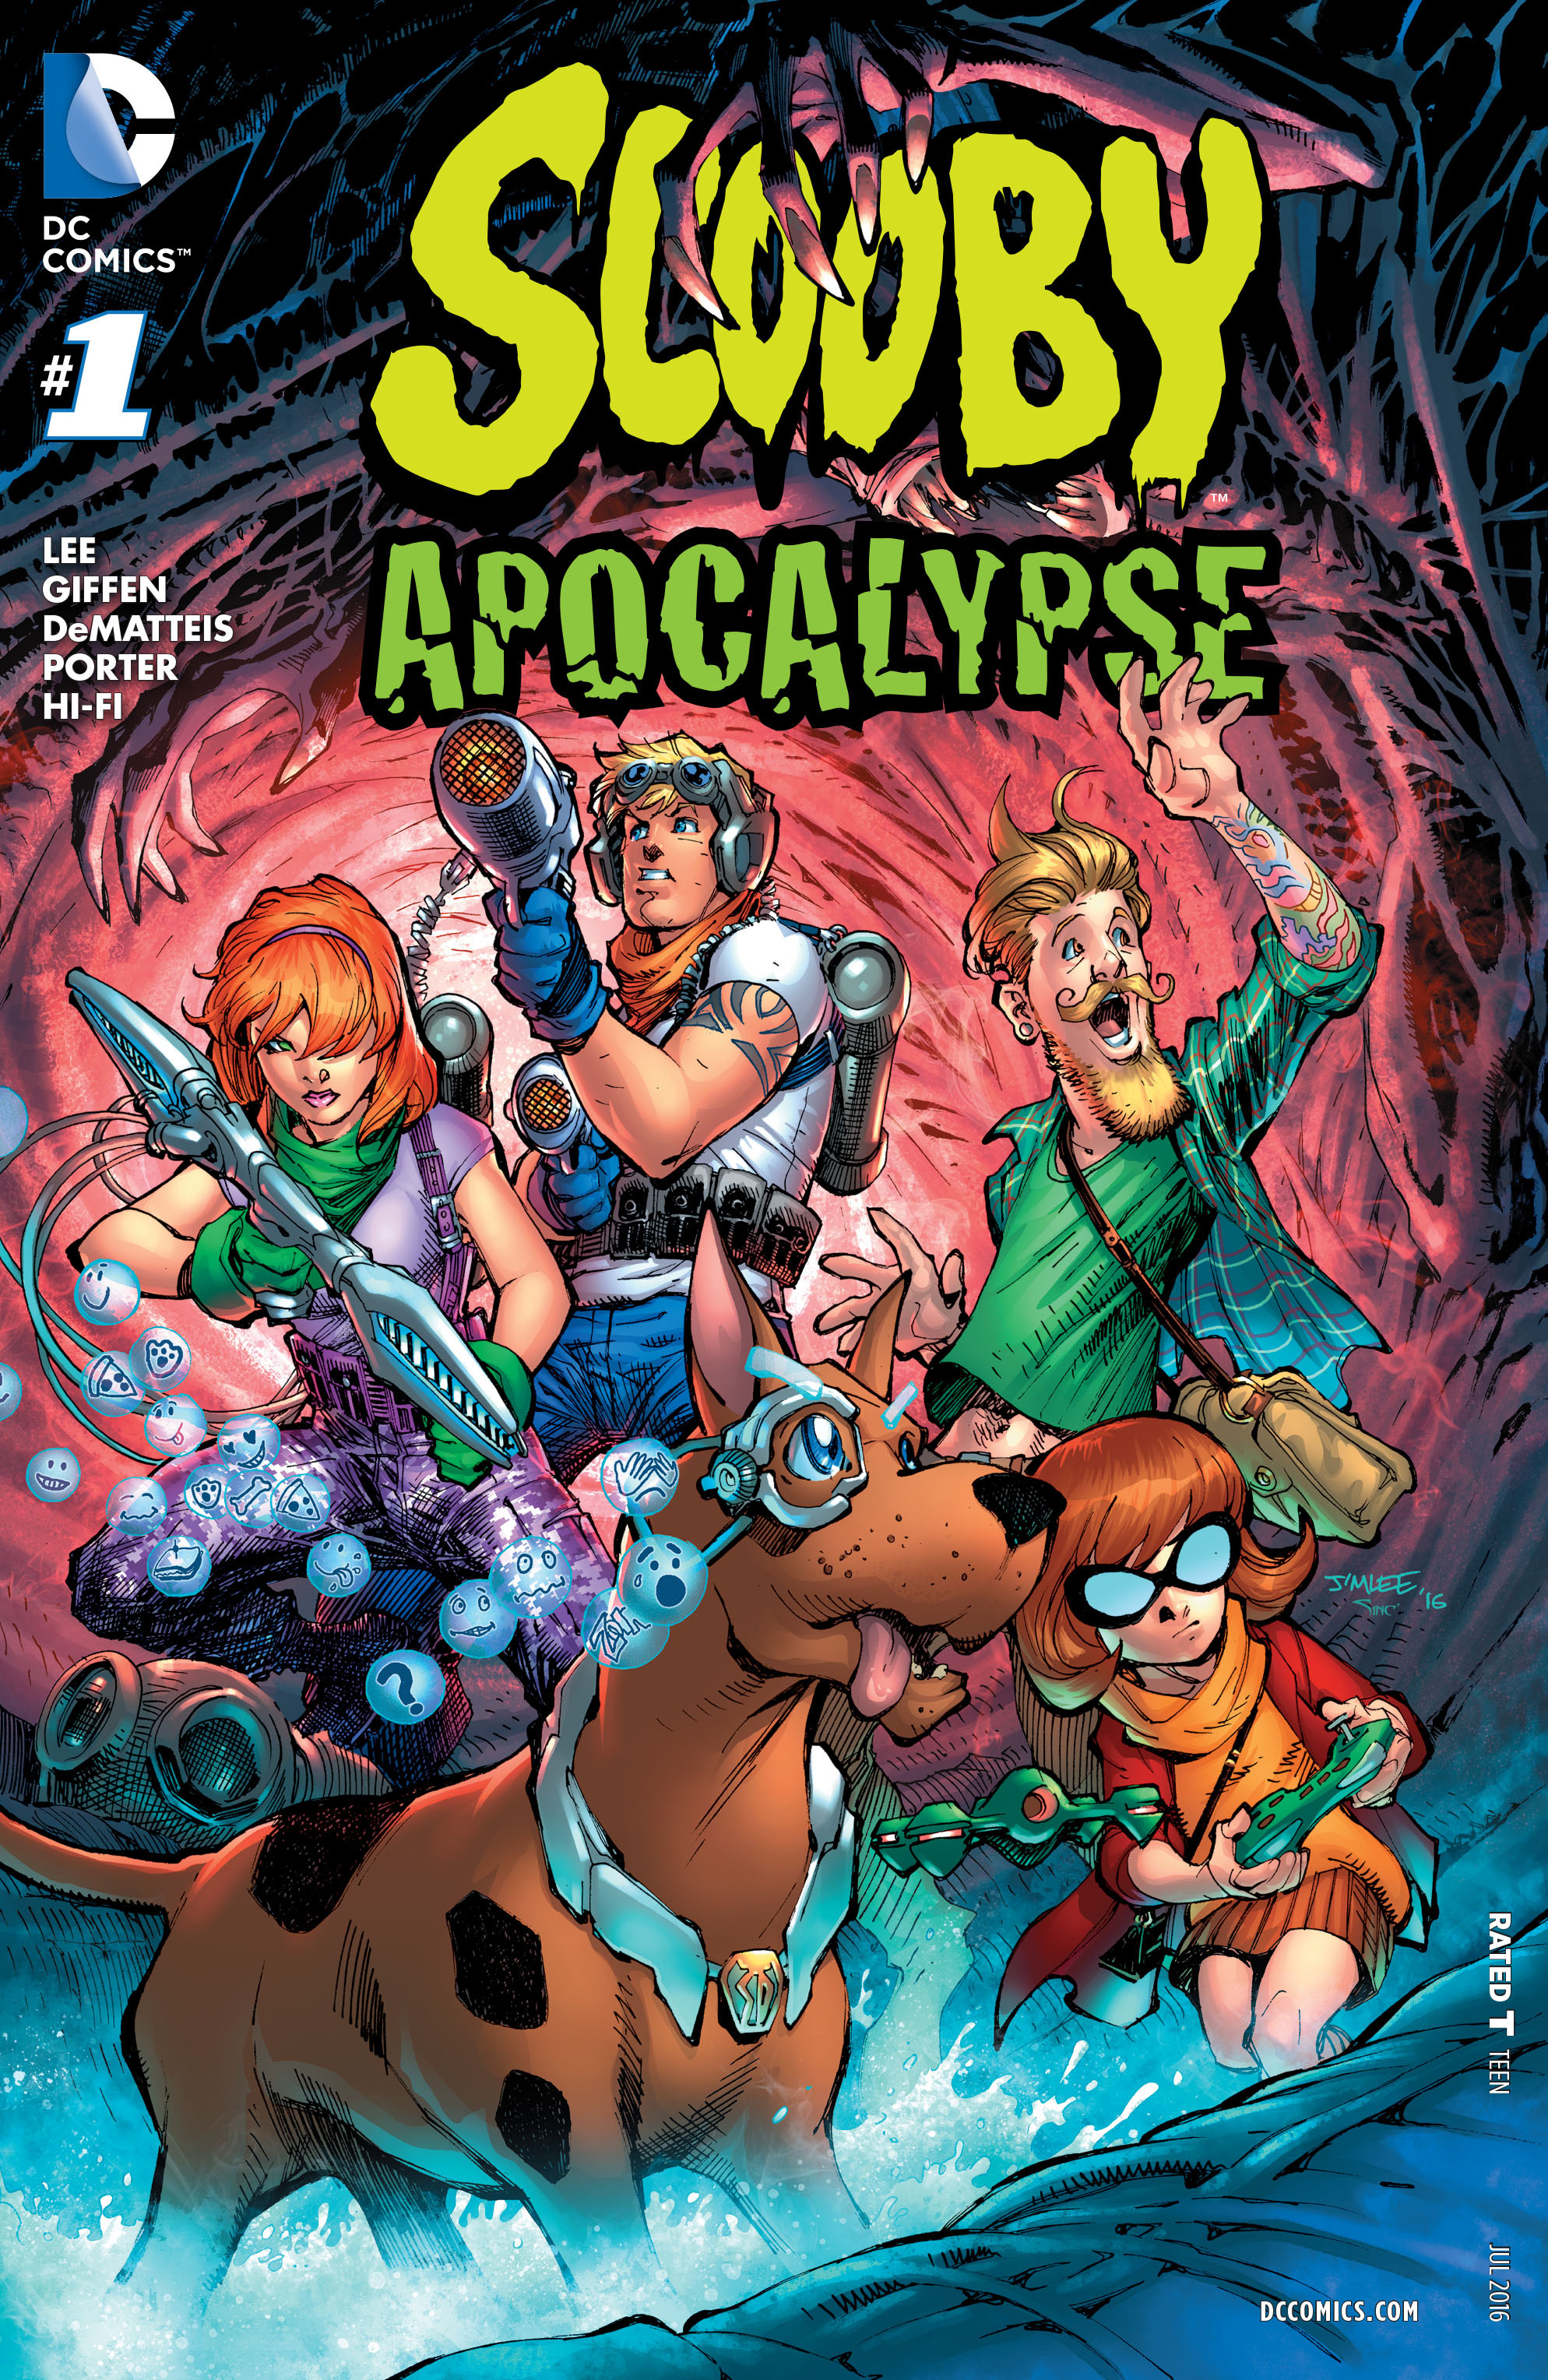 Scooby-Apocalypse-2016-001-000.jpg